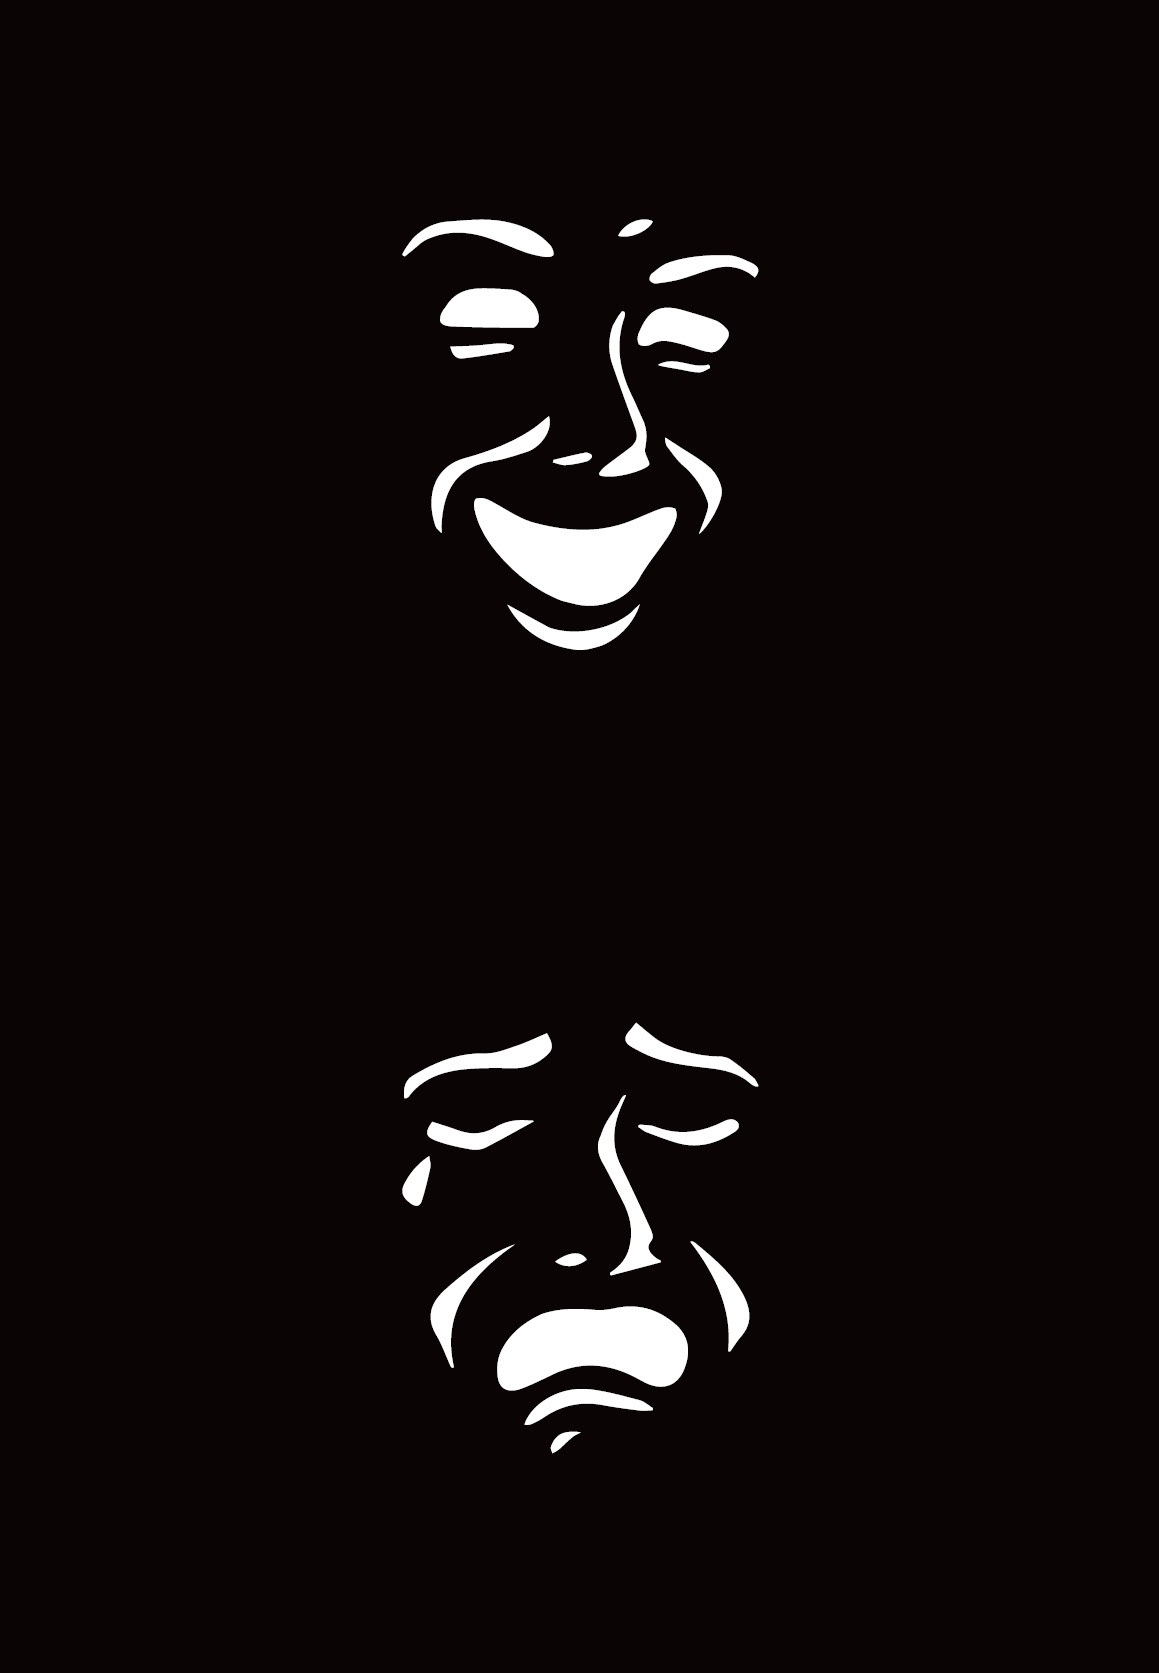 Maschere romane Teatro Romano Catania romana Roman masks masks Roman Theatre poster symbol interpretazioni artistiche